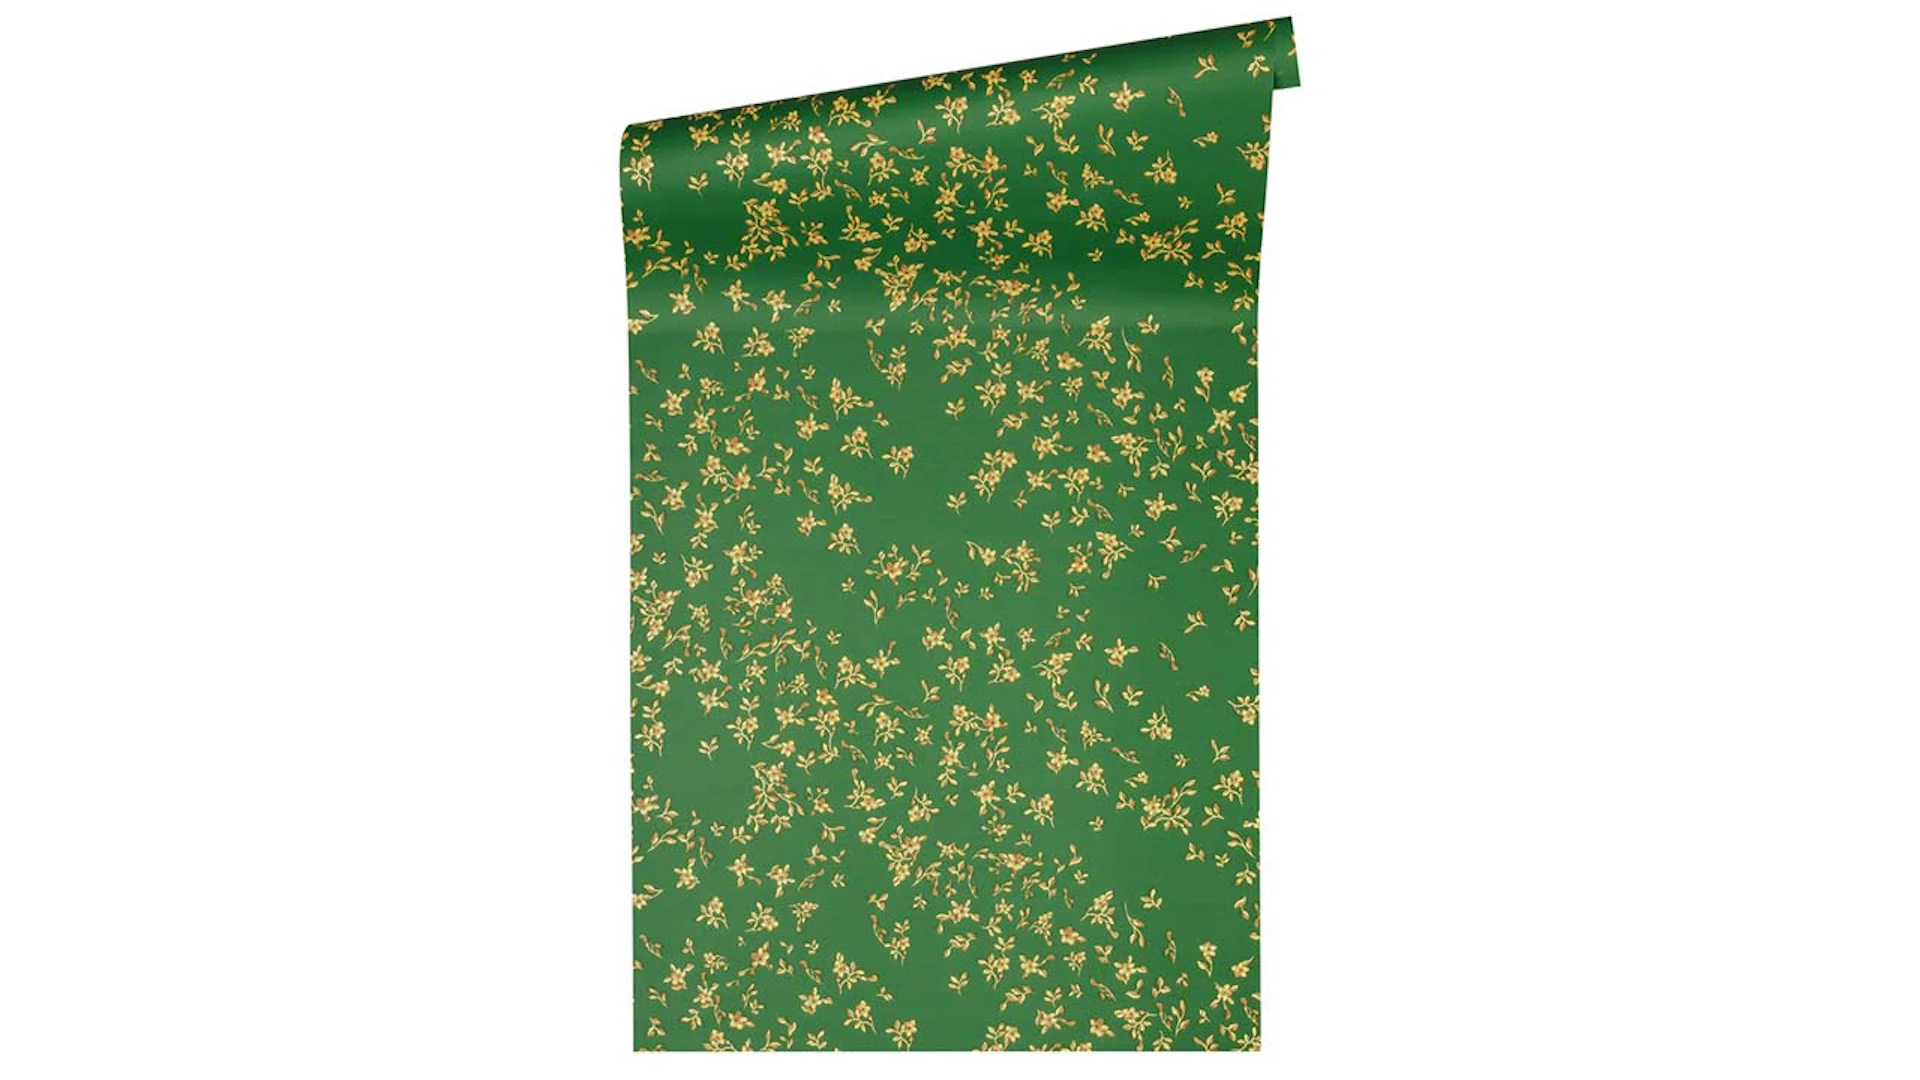 Vinyltapete grün Retro Klassisch Blumen & Natur Versace 4 856